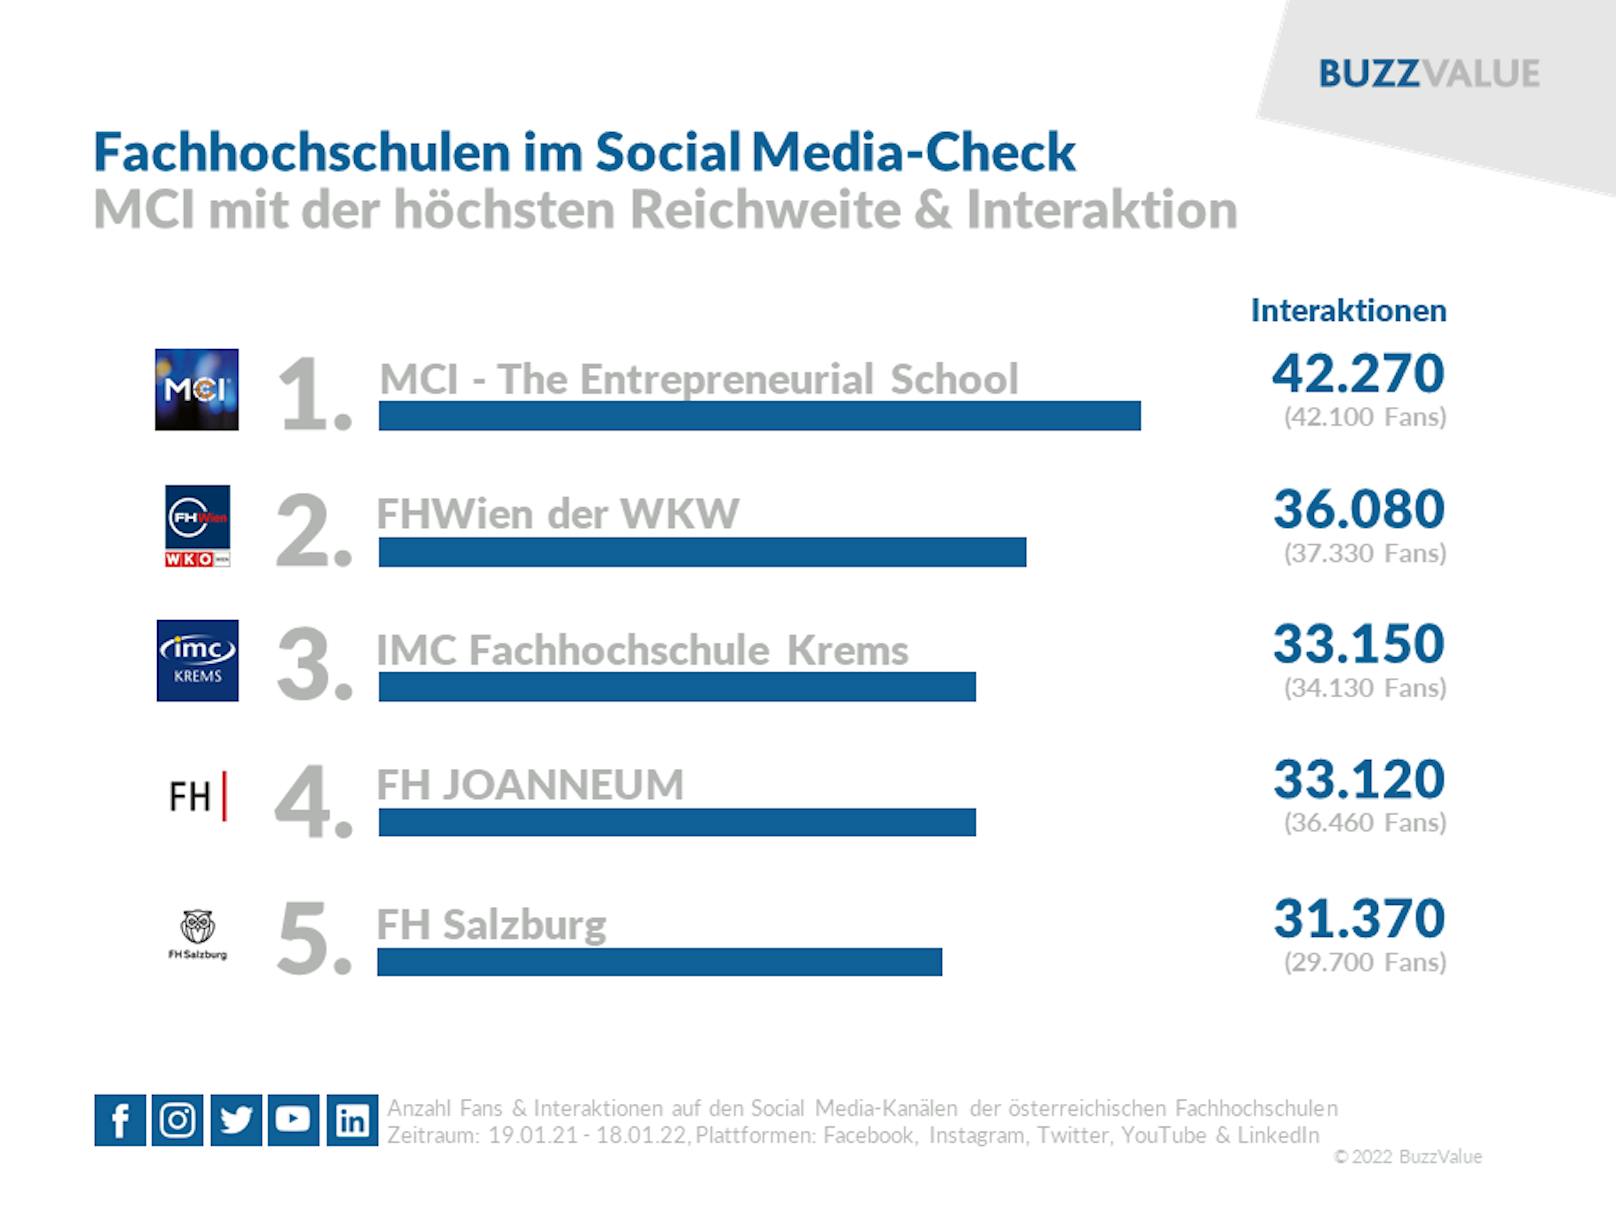 Unter den Fachhochschulen erreicht das Innsbrucker MCI die meisten Interaktionen.